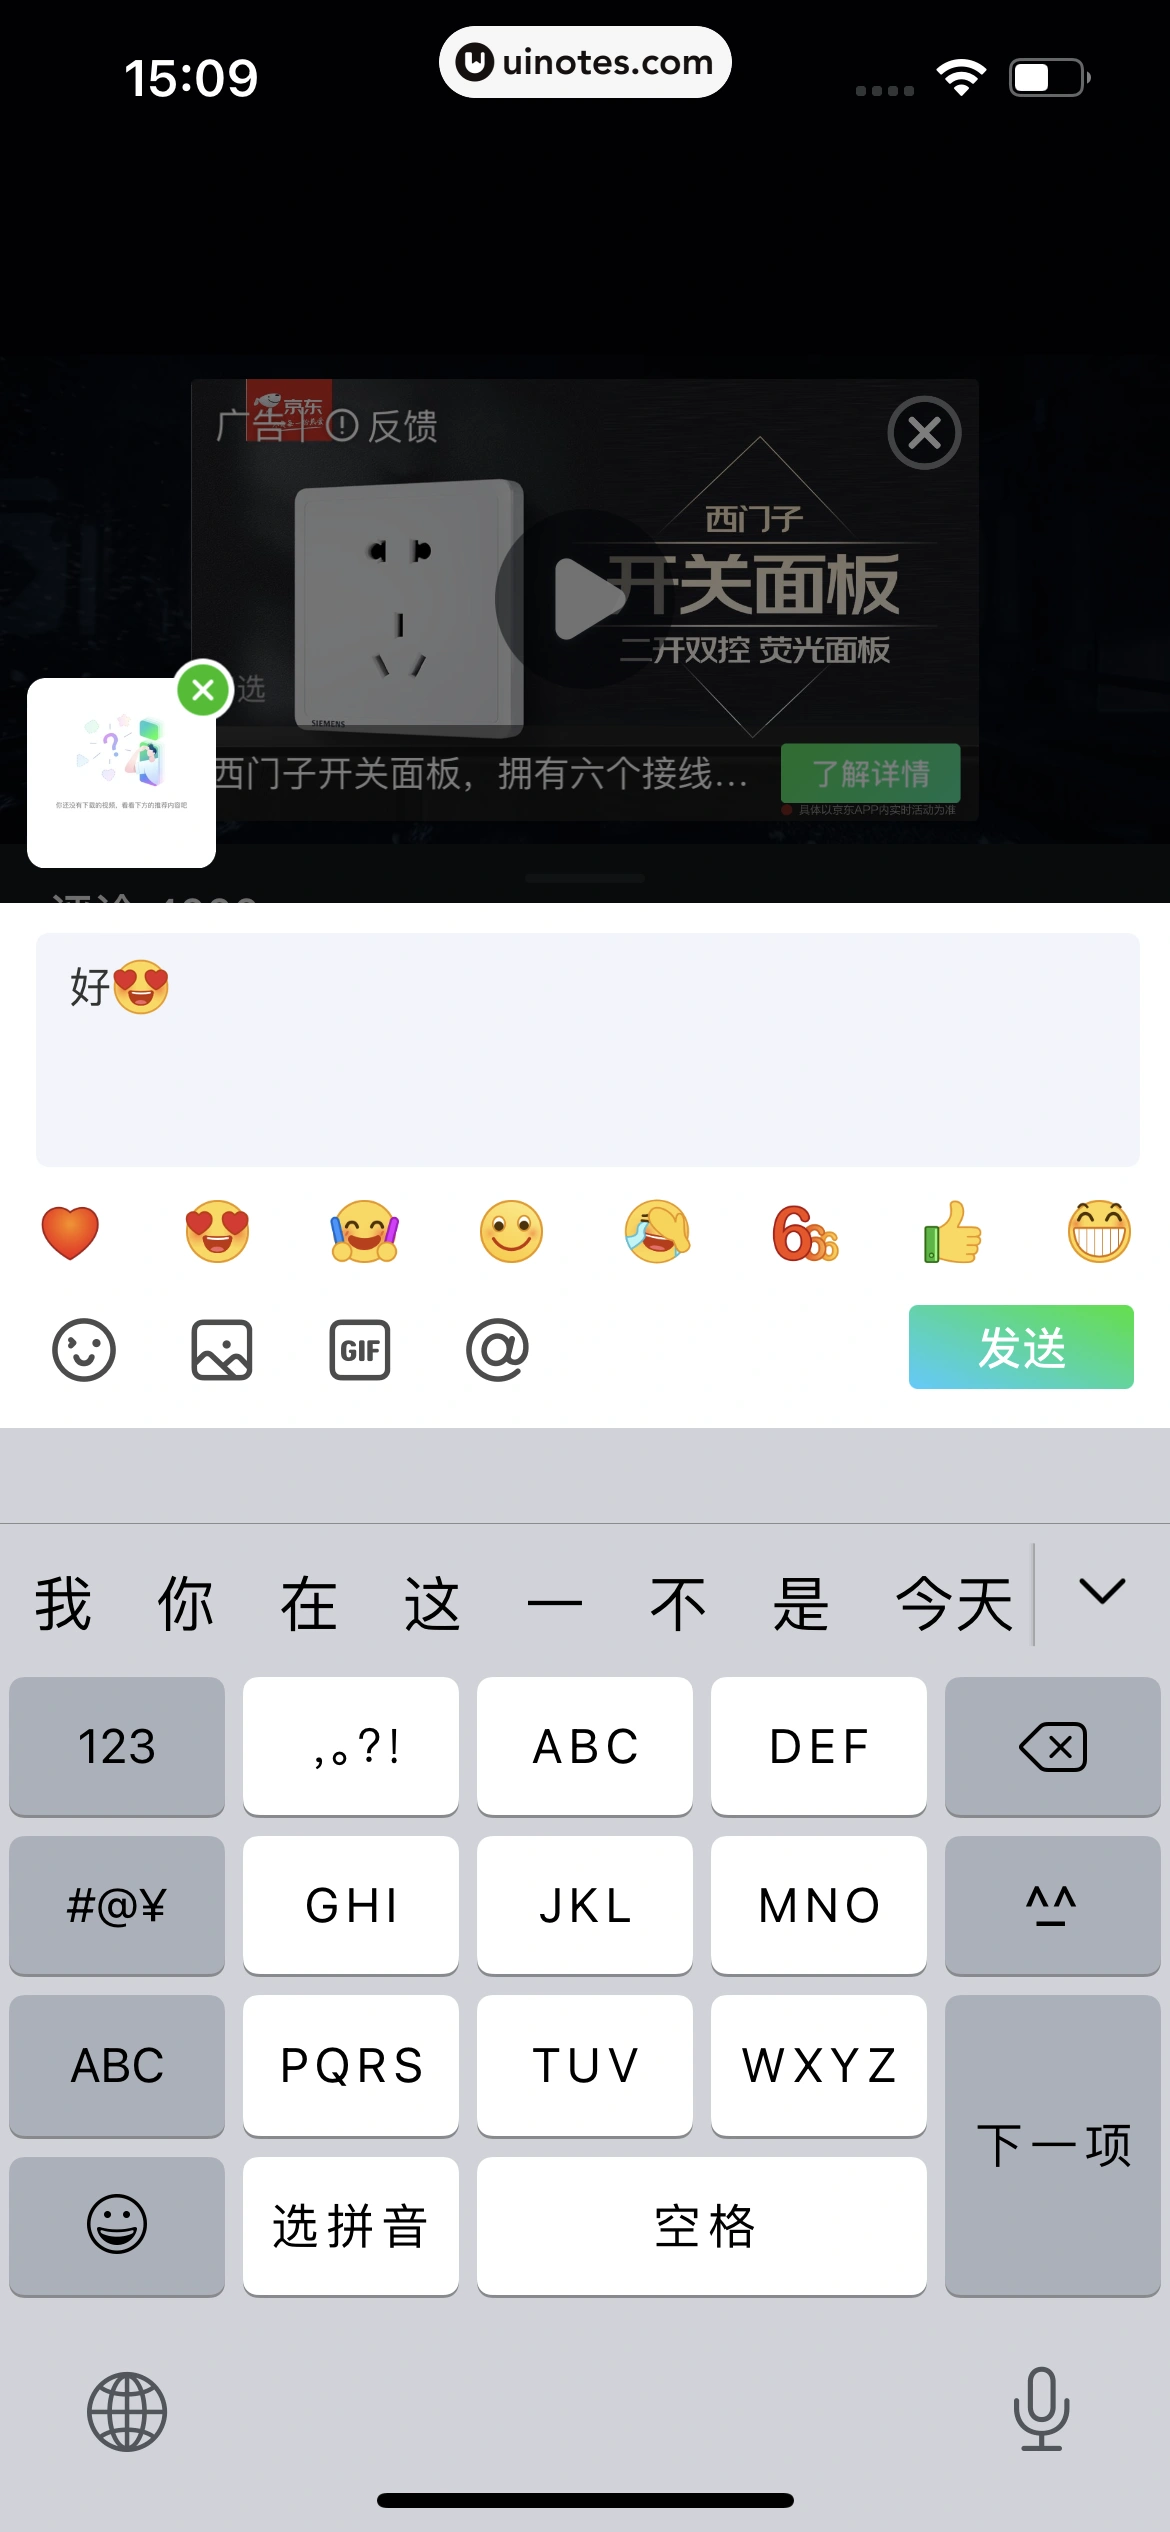 爱奇艺 App 截图 045 - UI Notes